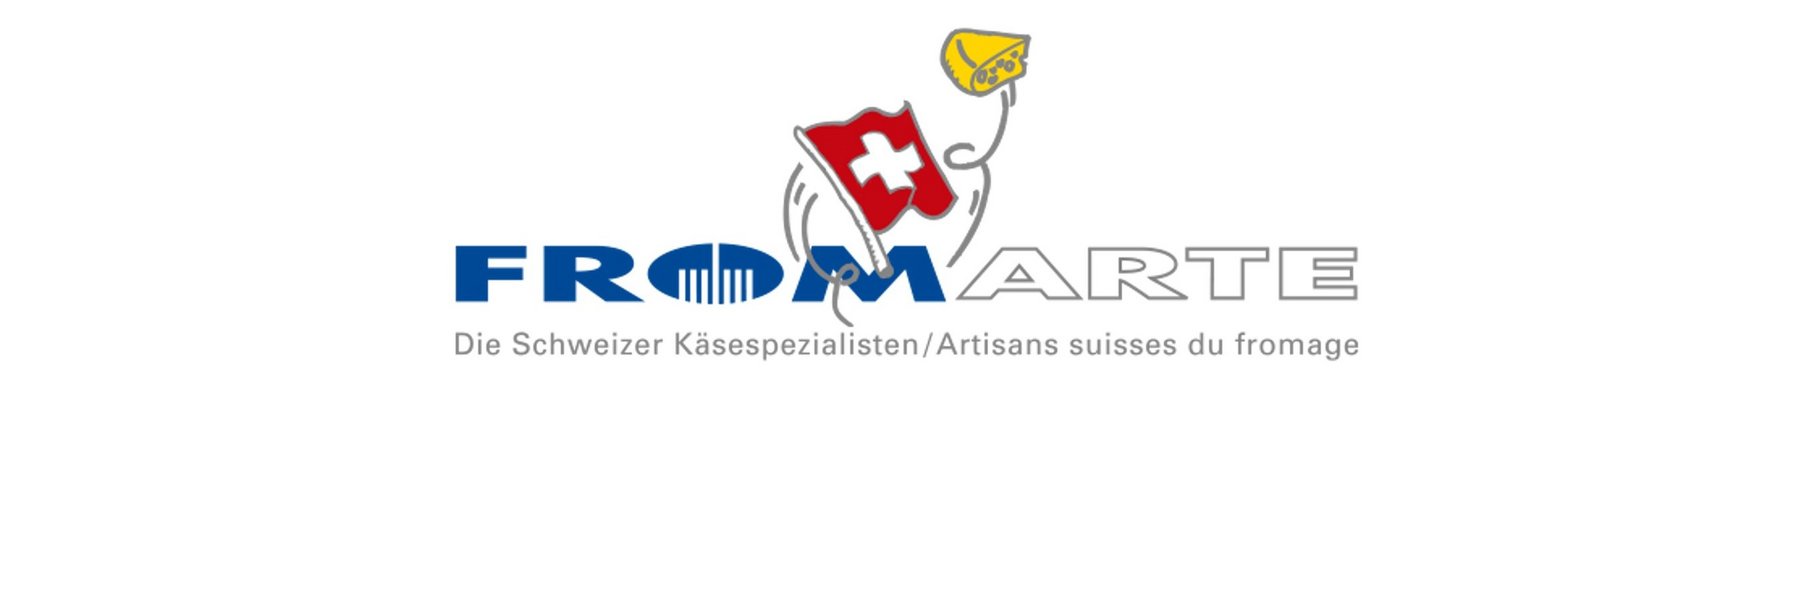 Fromarte è l’associazione mantello degli artigiani svizzeri del formaggio.